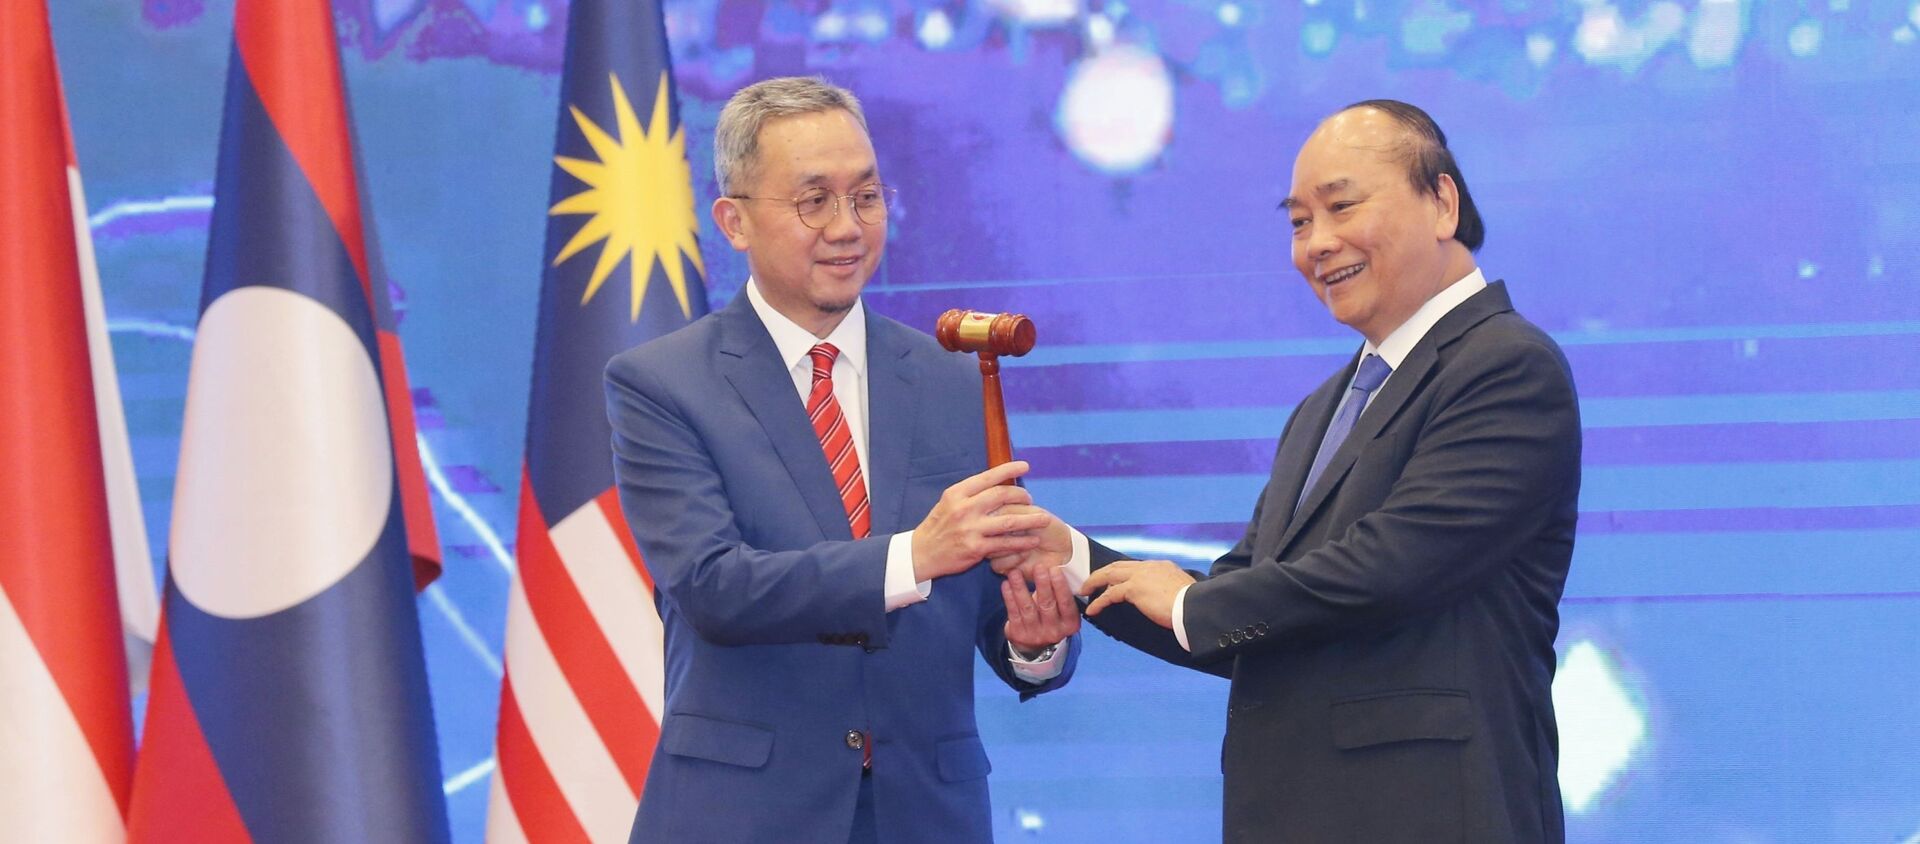 Thủ tướng Nguyễn Xuân Phúc trao chiếc búa gỗ cho Đại sứ Brunei tại Việt Nam-nước giữ vai trò Chủ tịch ASEAN 2021 - Sputnik Việt Nam, 1920, 15.11.2020